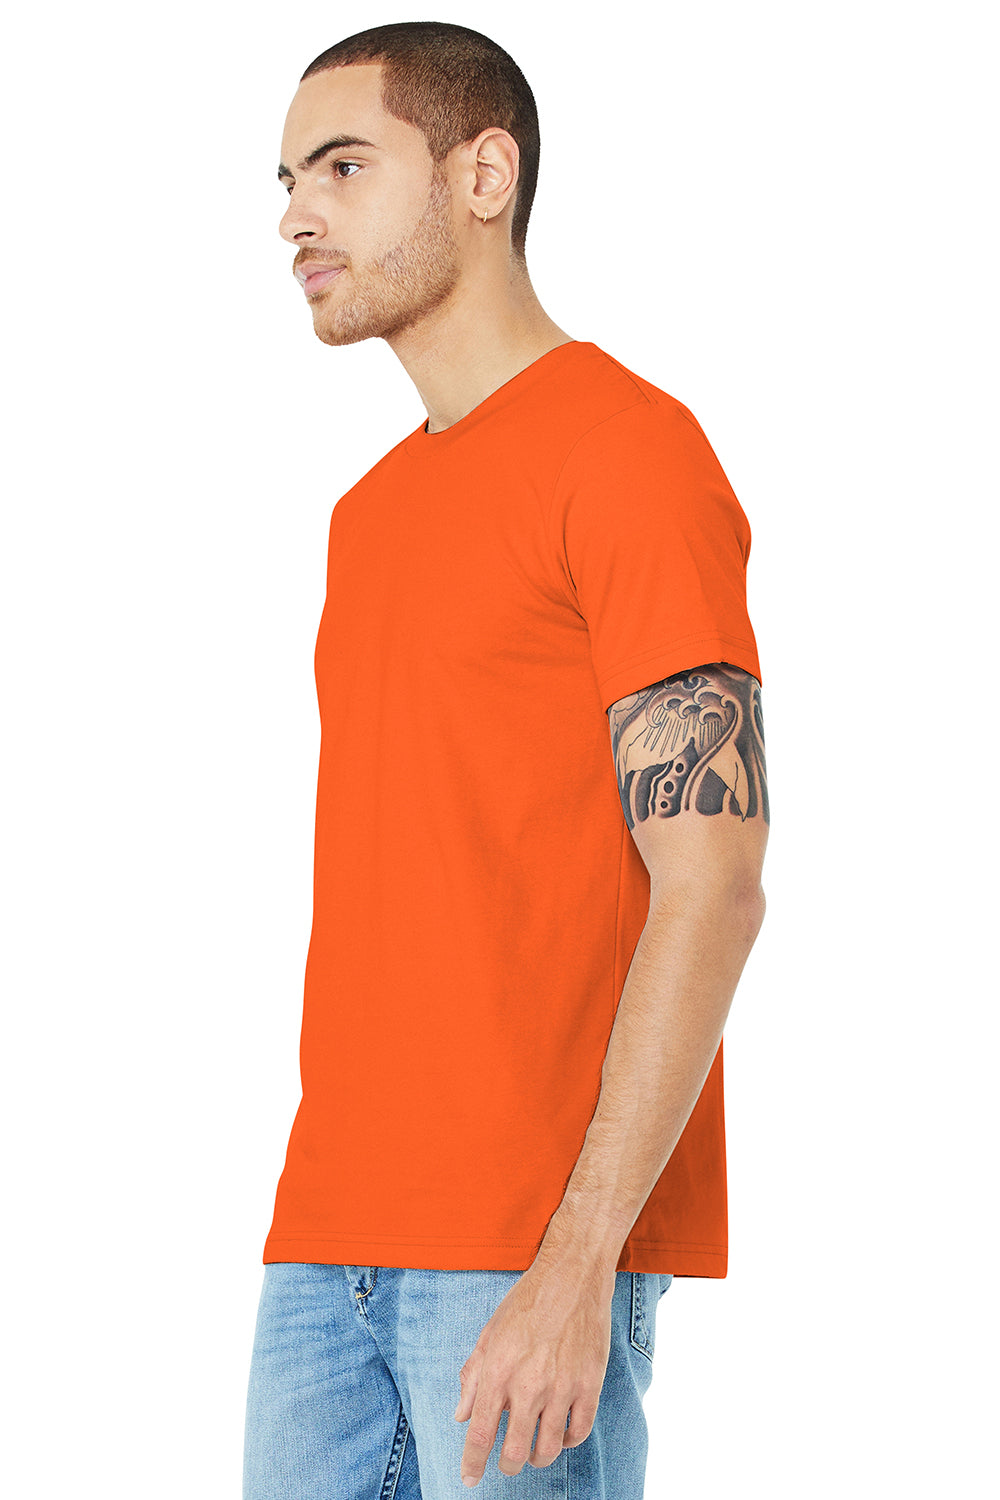 Bella + Canvas BC3001/3001C Mens Jersey Short Sleeve Crewneck T-Shirt Orange Model 3Q